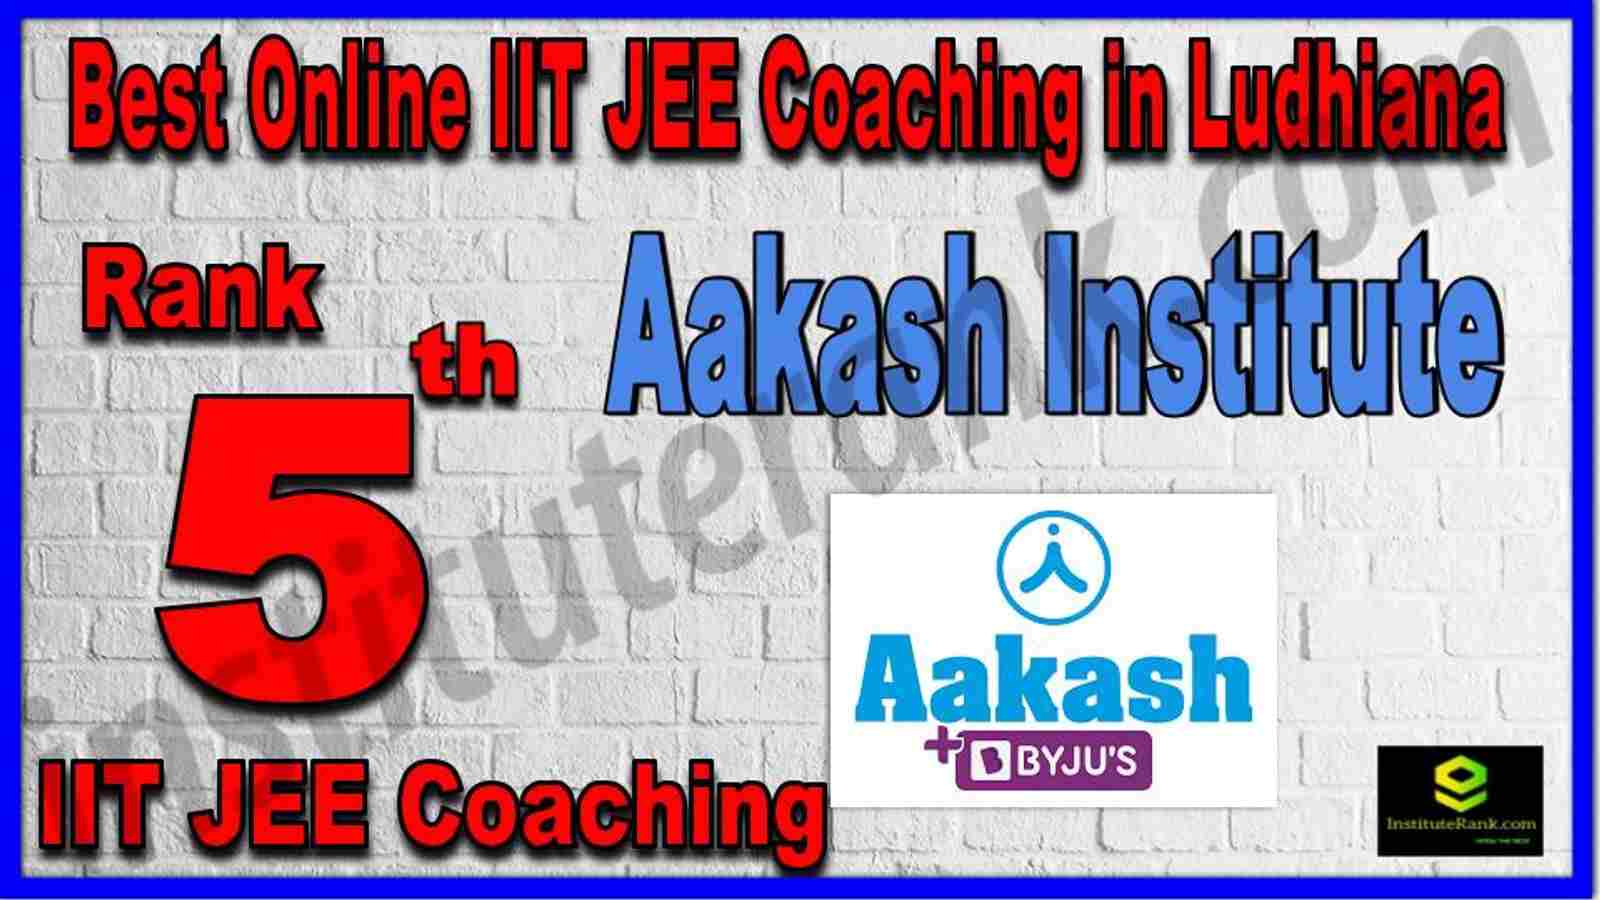 Rank 5th Best Online IIT JEE Coaching in Ludhiana